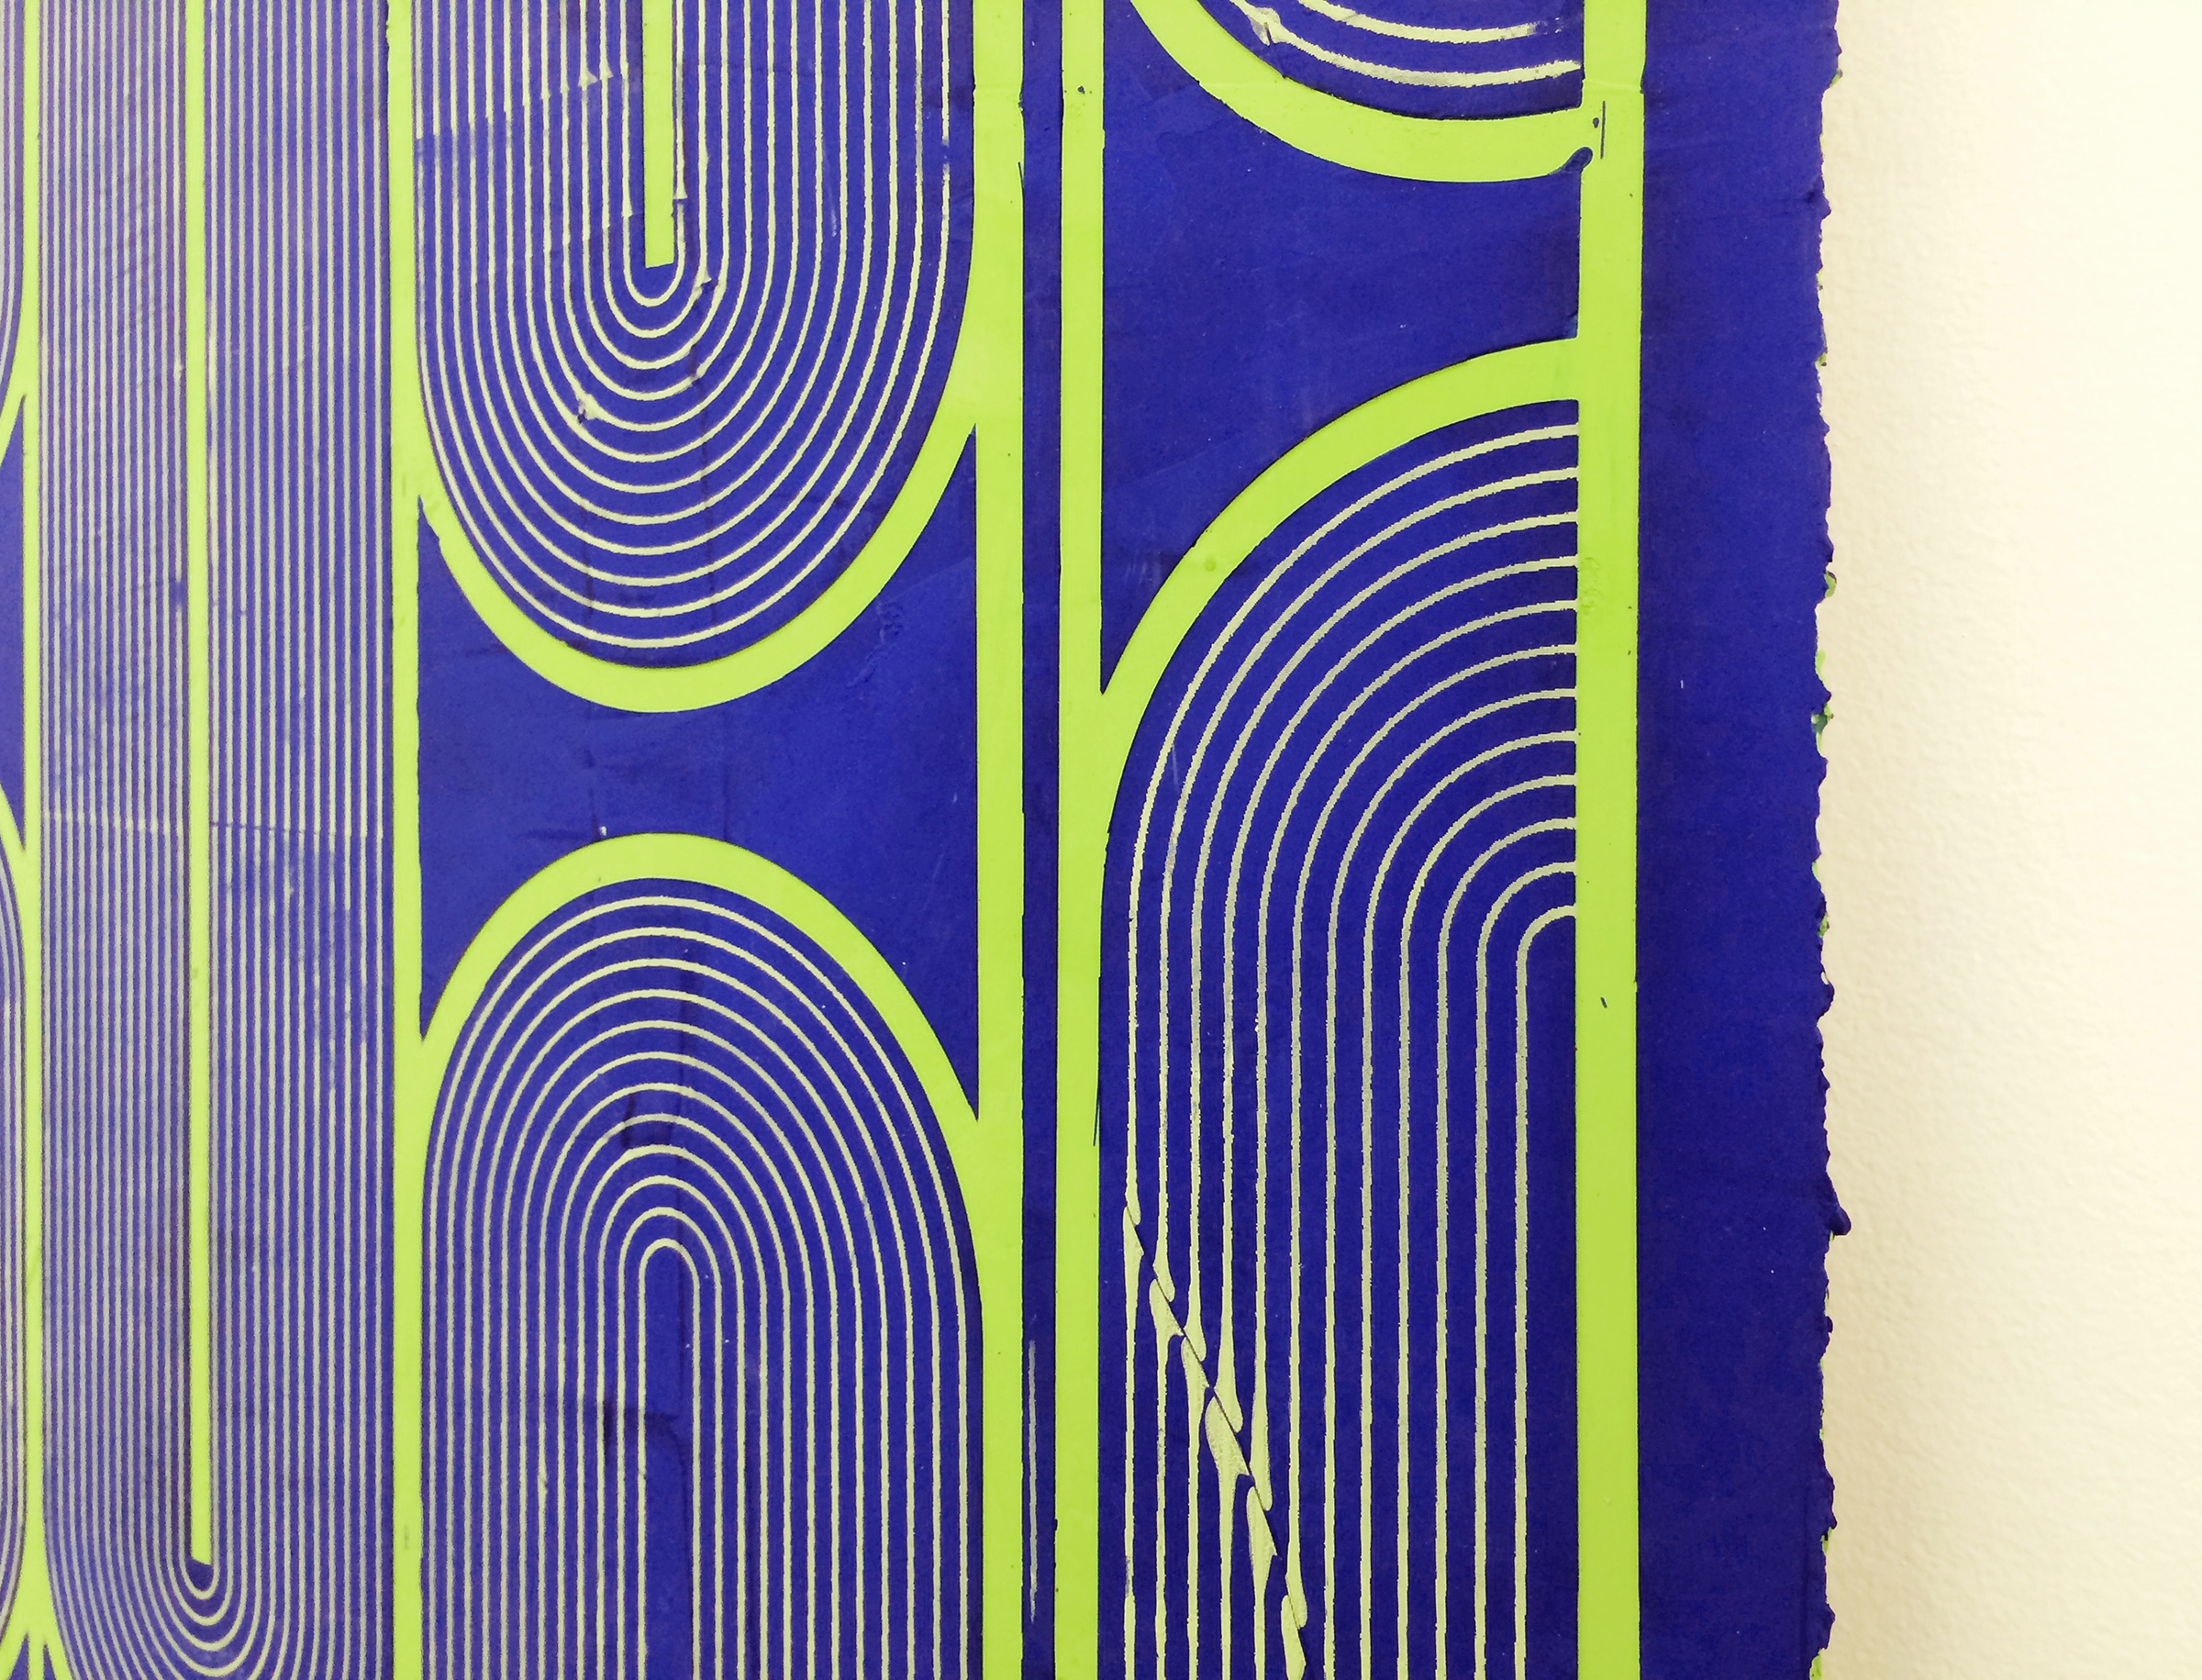   ELISE FERGUSON  (detail) &nbsp;Vinyl Gate , 2016, pigmented plaster on panel, 30" x 40" 